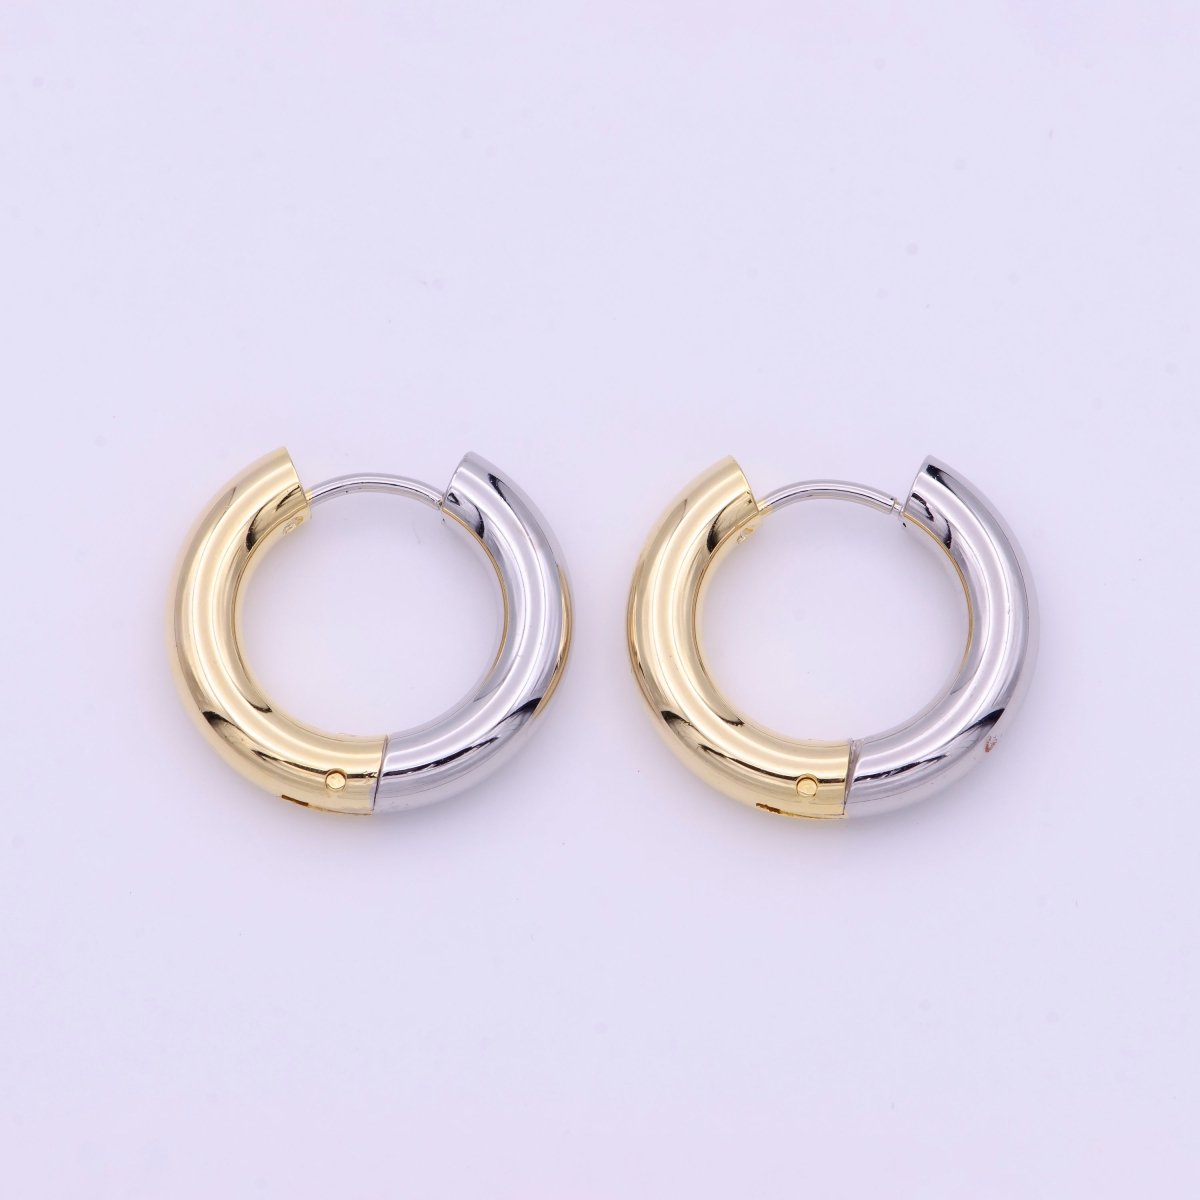 Mixed Metal Silver & Gold 20mm Huggie Hoops Earrings | Y-168 - DLUXCA